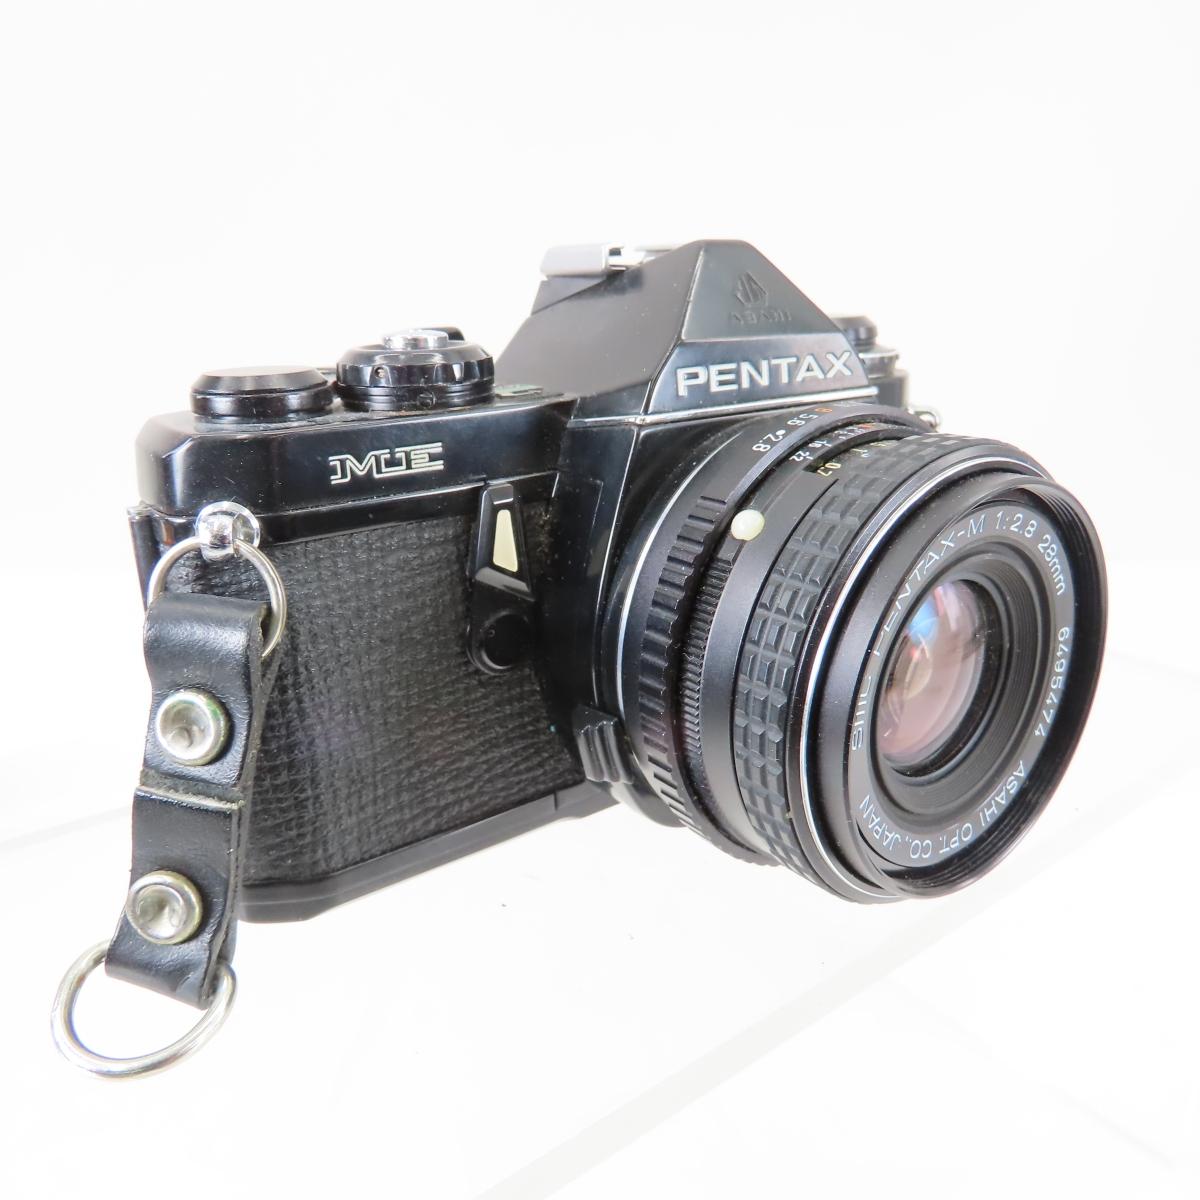 Pentax ME 35mm Film Camera & 2 Auto 110 Cameras